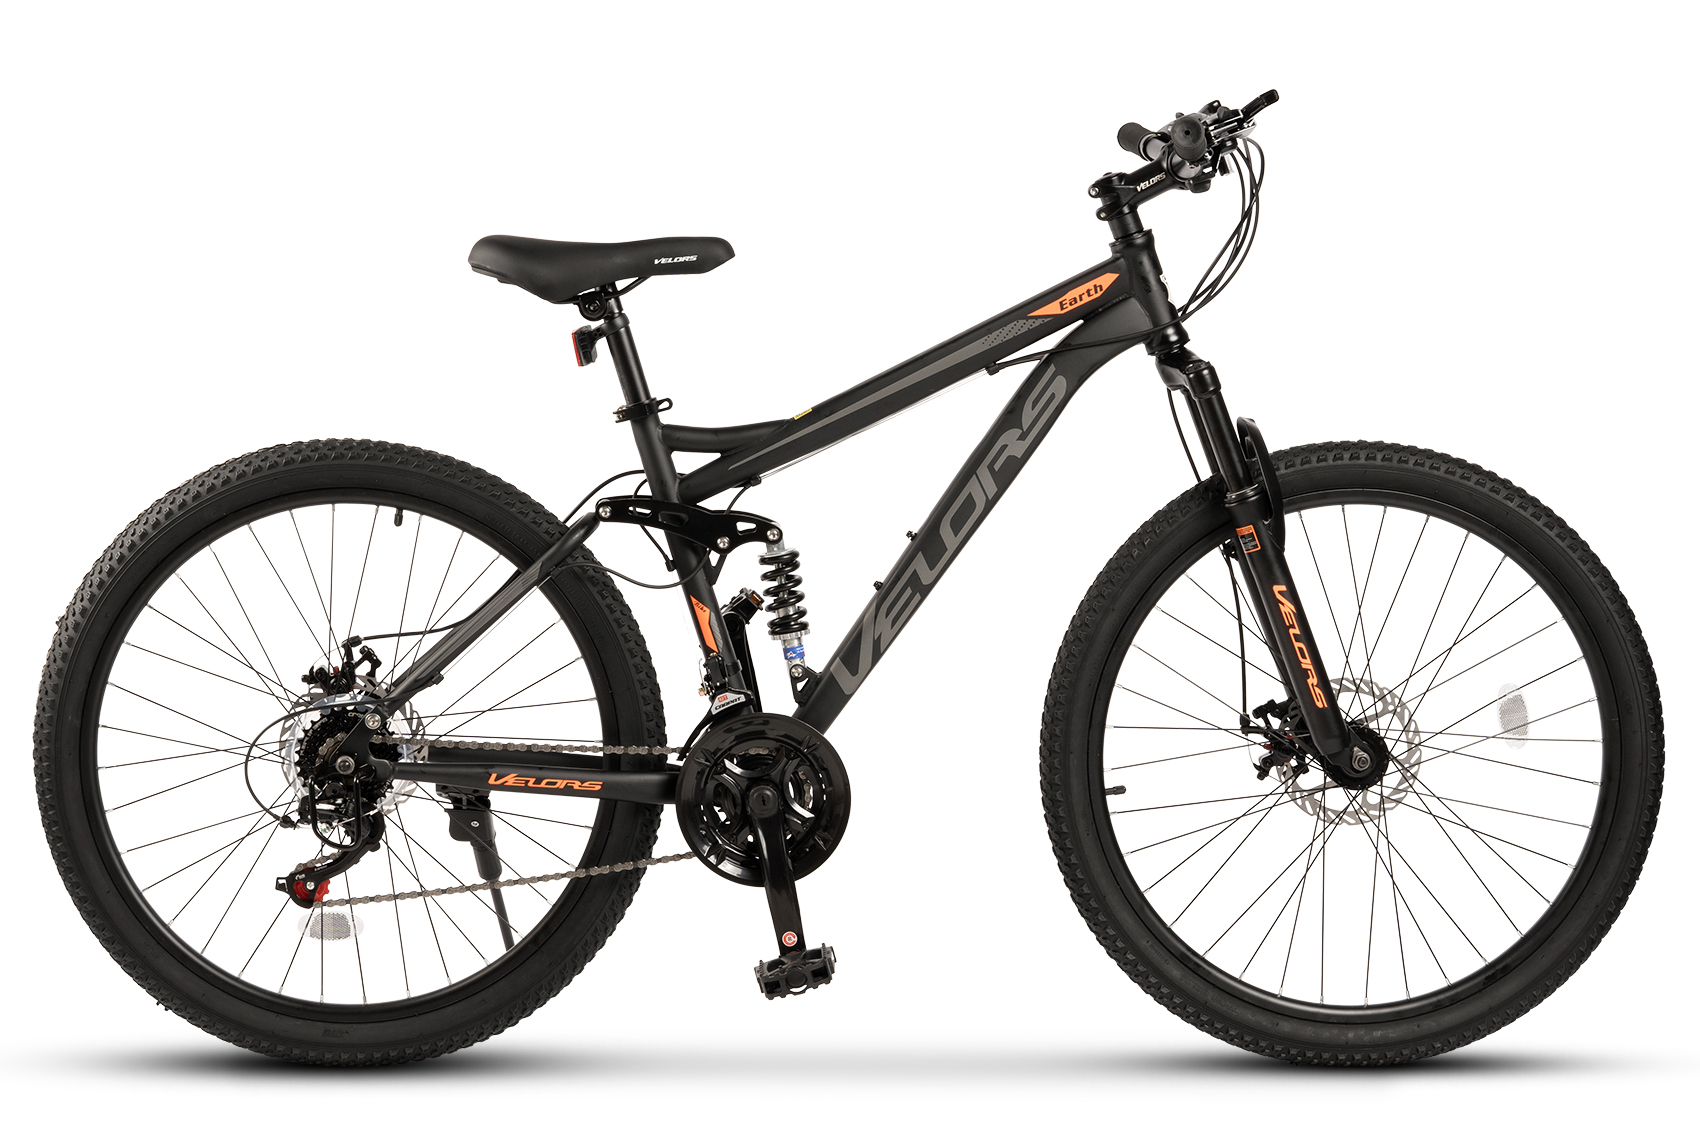 PROMO BICICLETE - Bicicleta MTB Full-Suspension Velors Earth V2660G 26", Negru/Gri/Portocaliu, https:carpatsport.ro